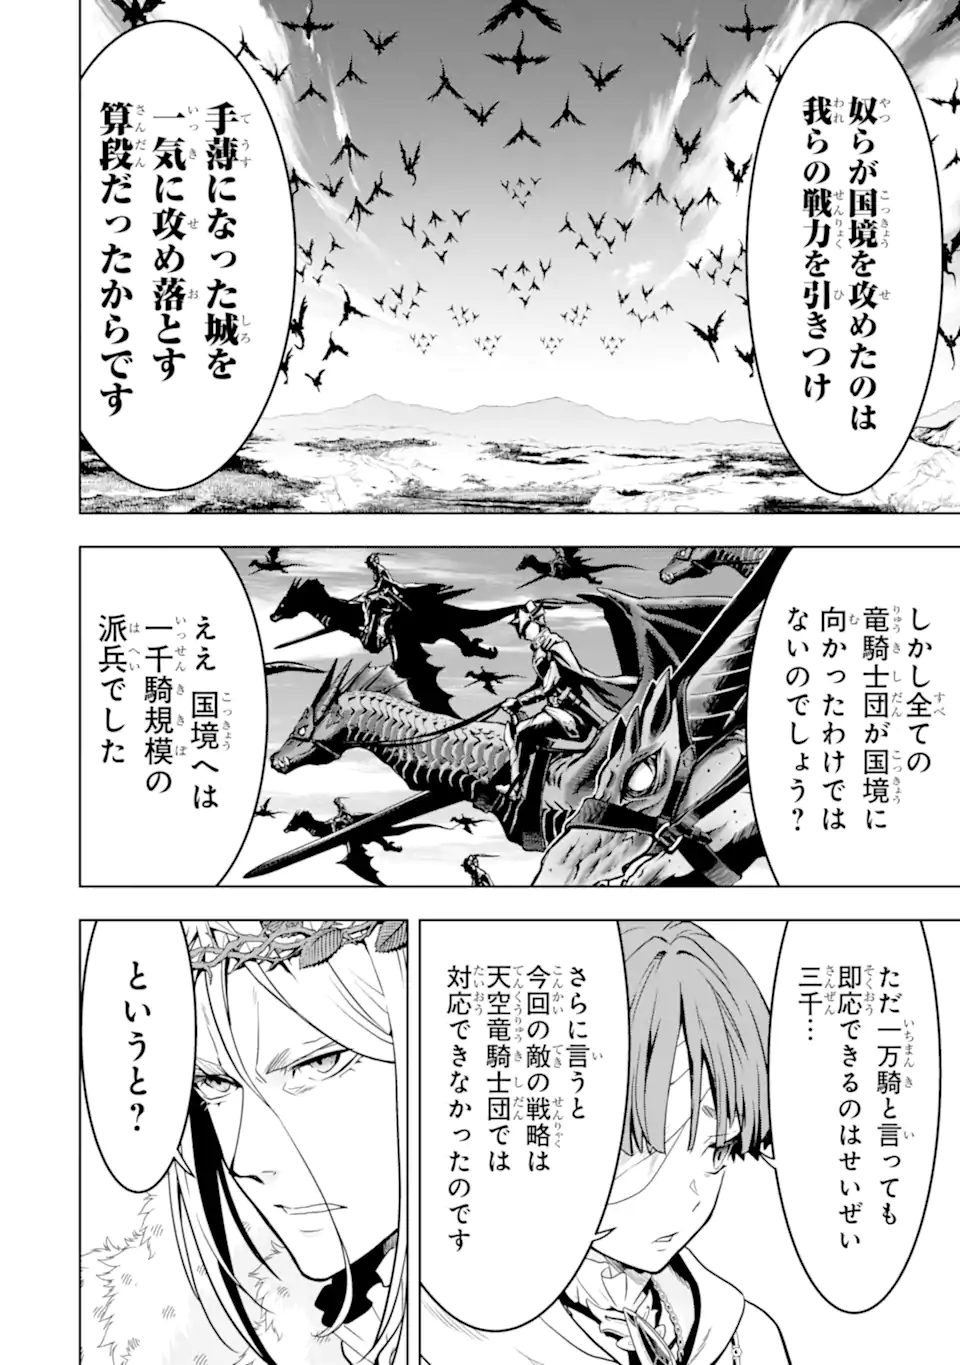 Koko wa Ore ni Makasete Saki ni Ike to Itte kara 10 Nen ga Tattara Densetsu ni Natteita - Chapter 36.4 - Page 2